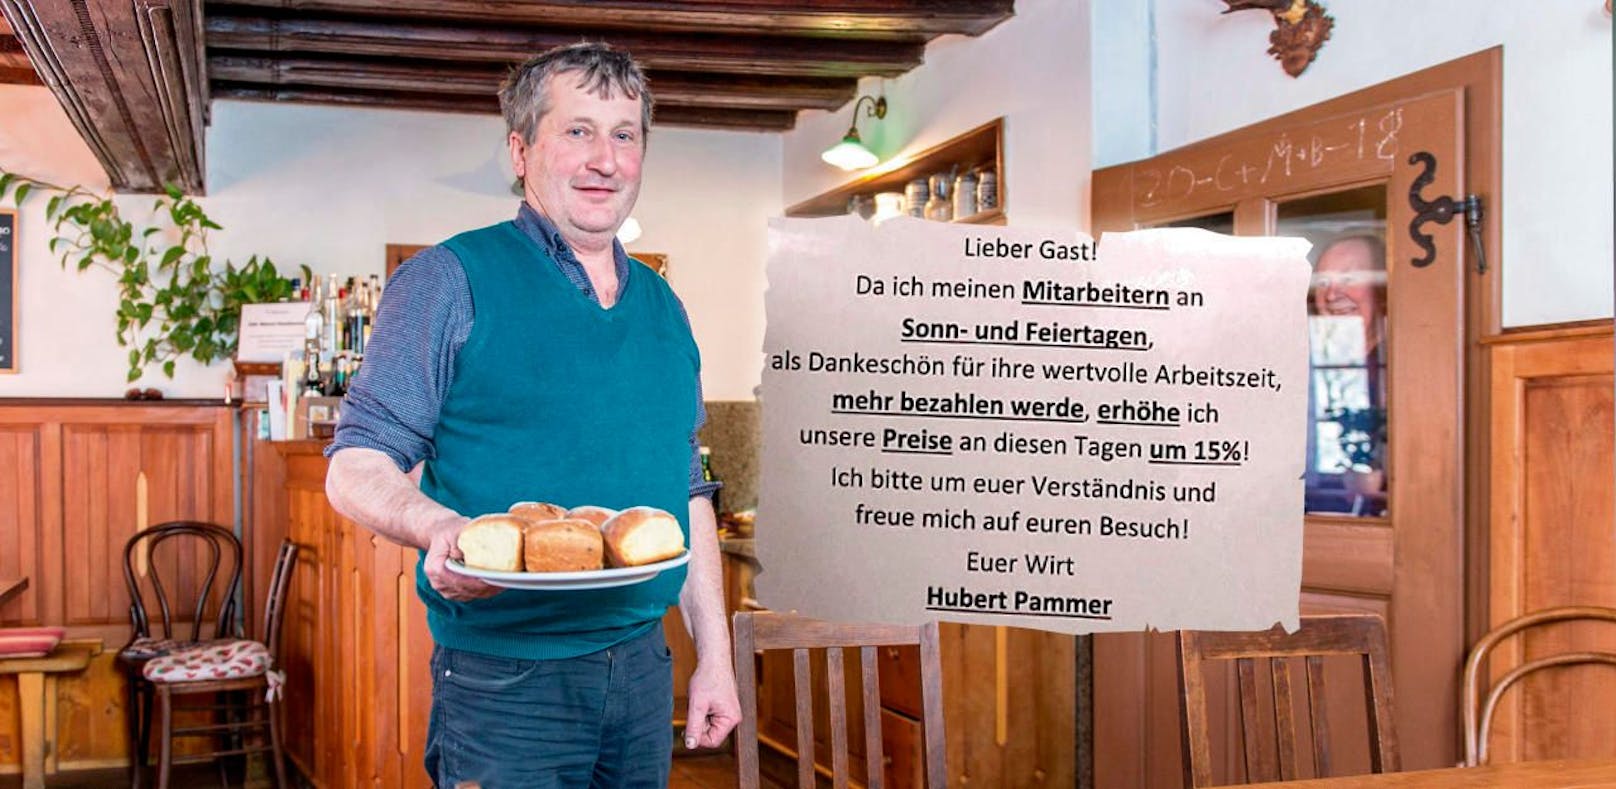 Hubert Pammer zahlt seinen Mitarbeitern  an Sonn- und Feiertagen um 50 Prozent mehr, als Ausgleich müssen die Gäste an diesen Tagen 15 Prozent mehr fürs Essen und Trinken zahlen.